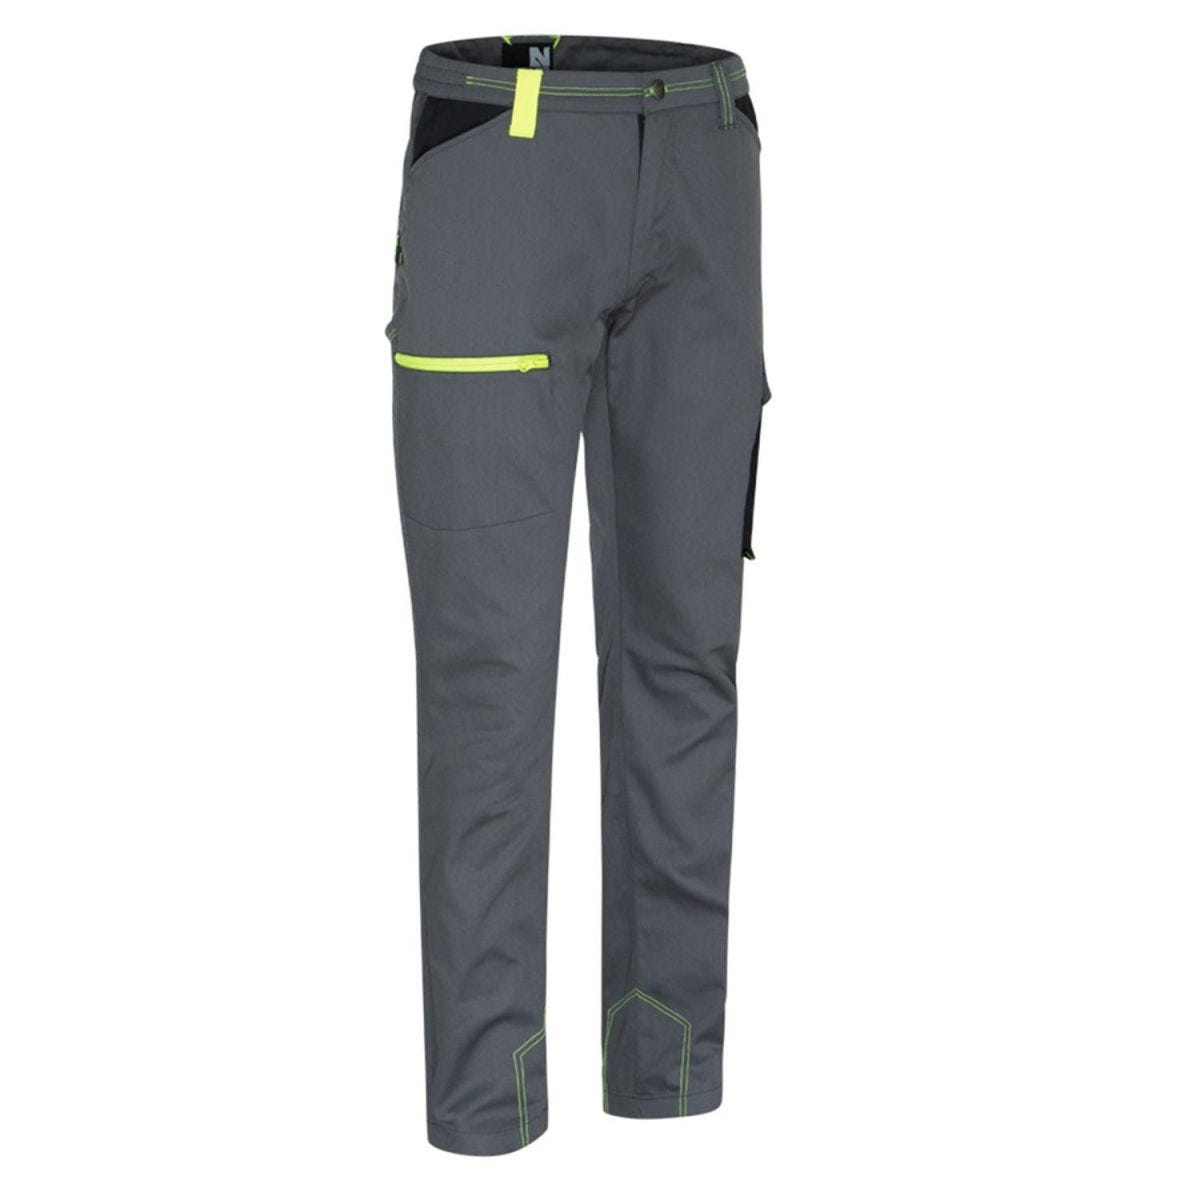 Pantalon Marlow gris et jaune fluo - North Ways - Taille XL 0